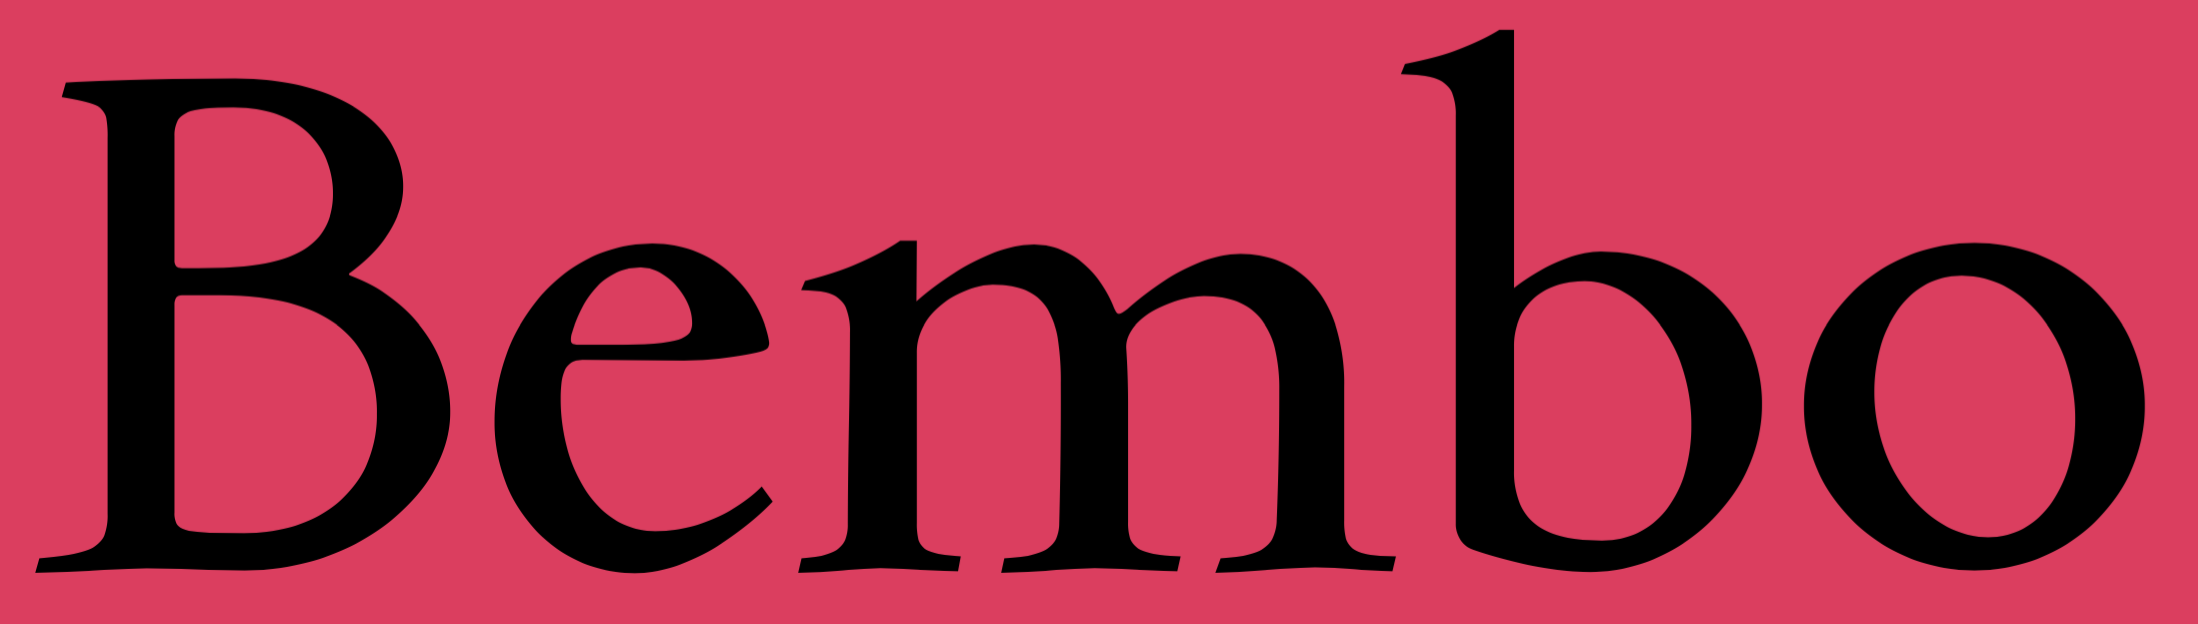 griffo bembo typeface 1495 italic